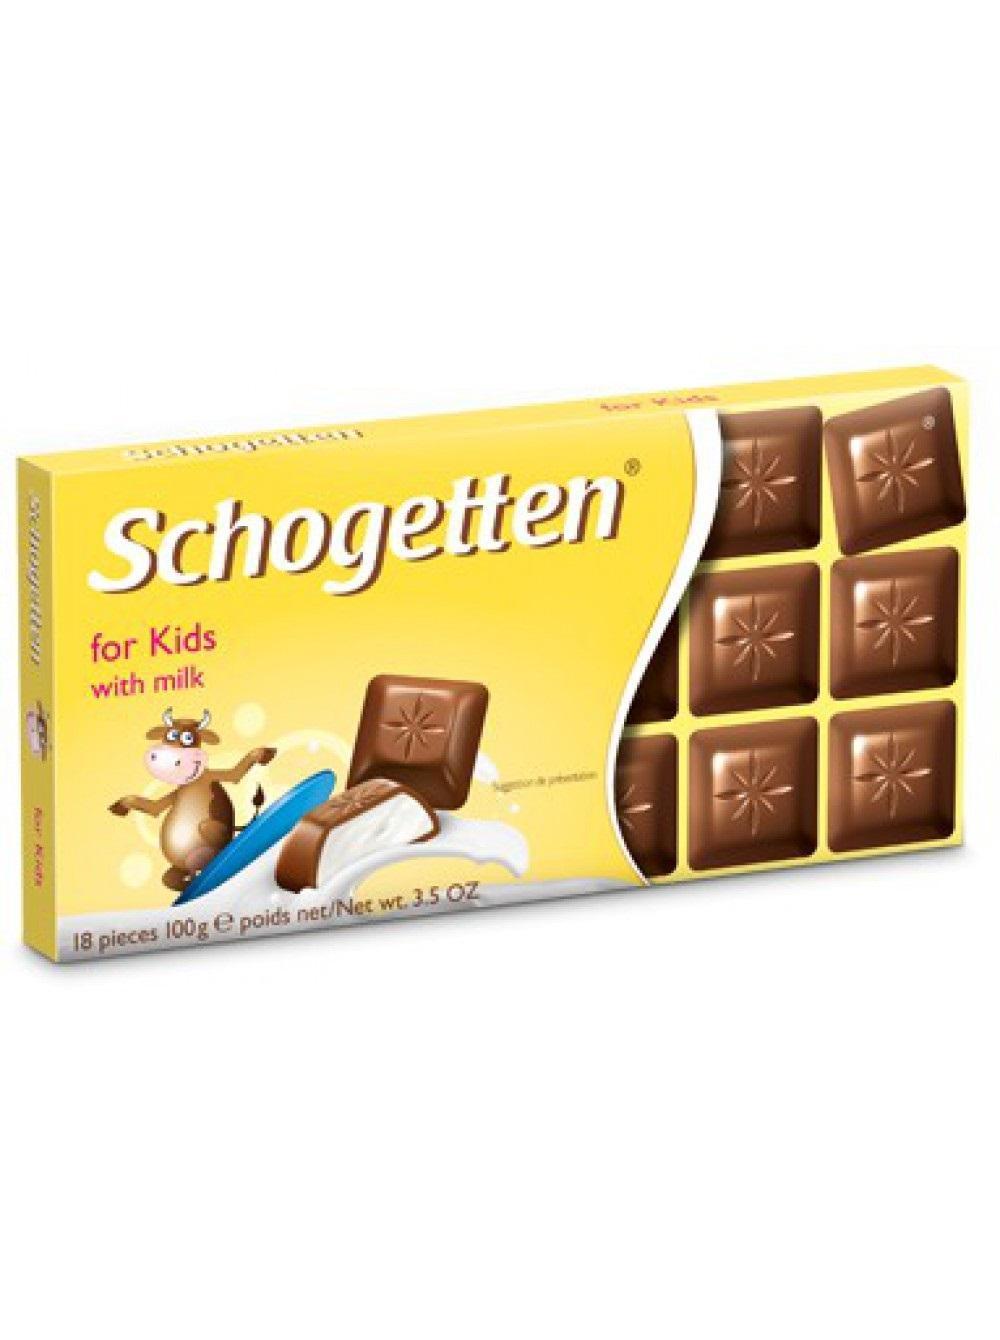 Шоколад Schogetten FOR KIDS молочный с кремовой сливочной начинкой, комплект 3 шт по 100 гр., картон